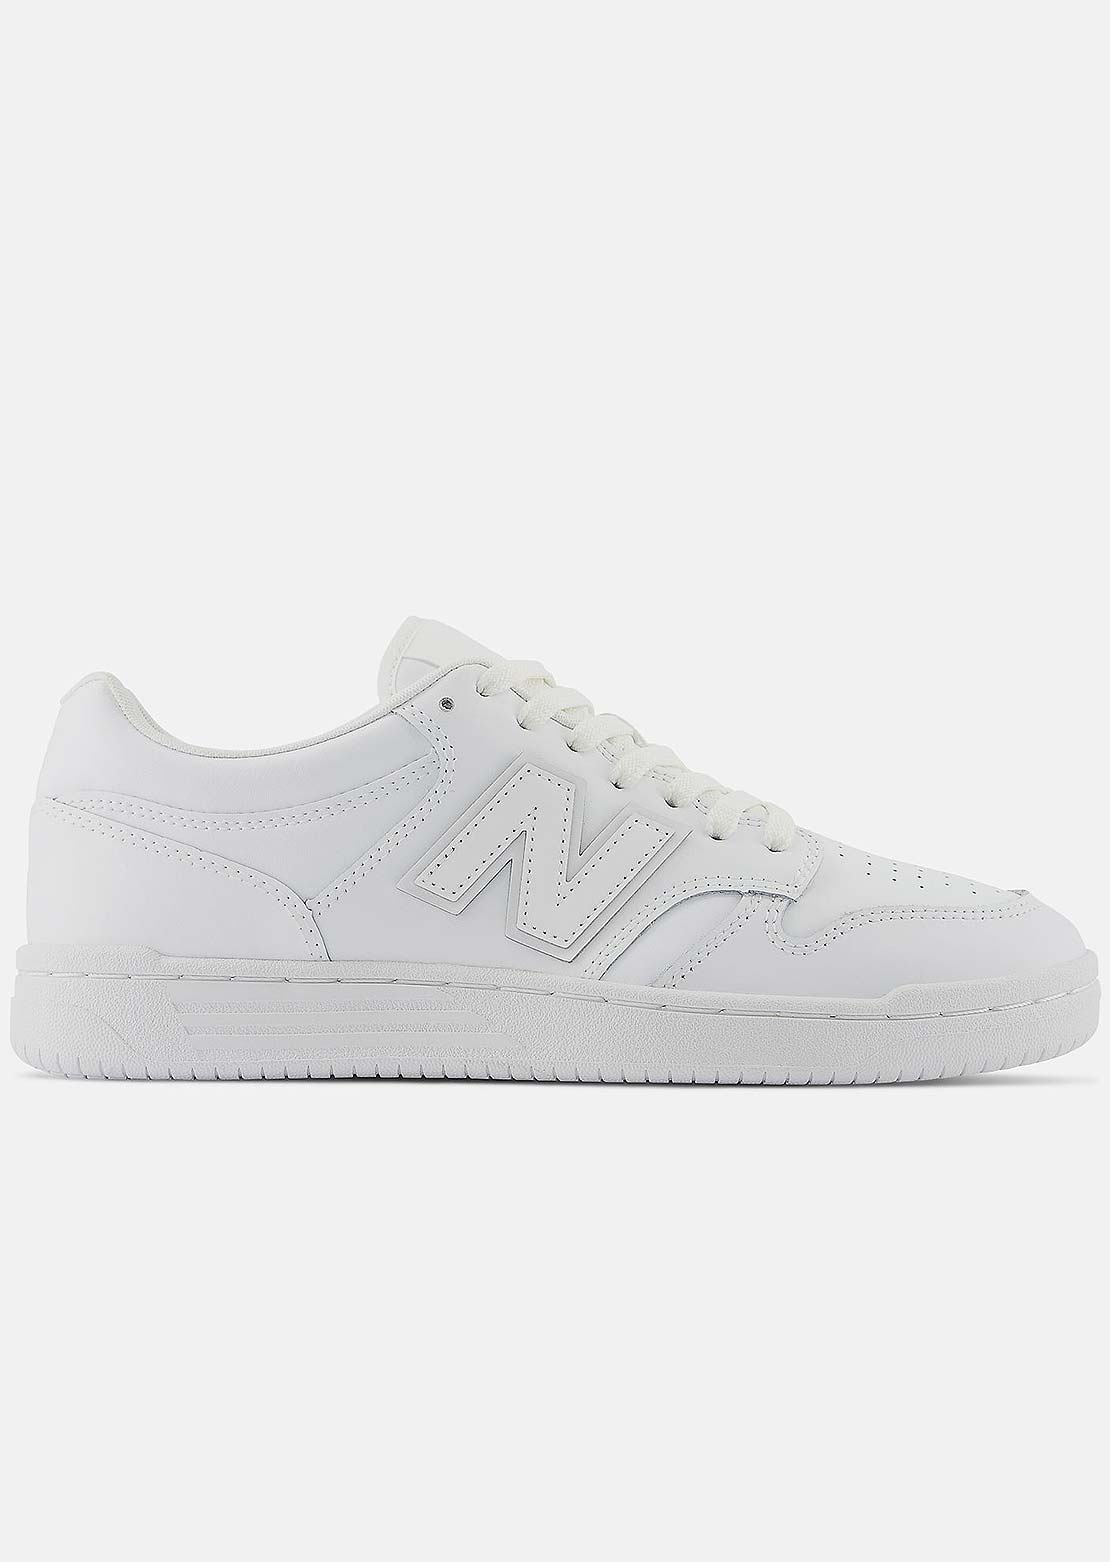 New Balance Unisex 480 Shoes White/White/White